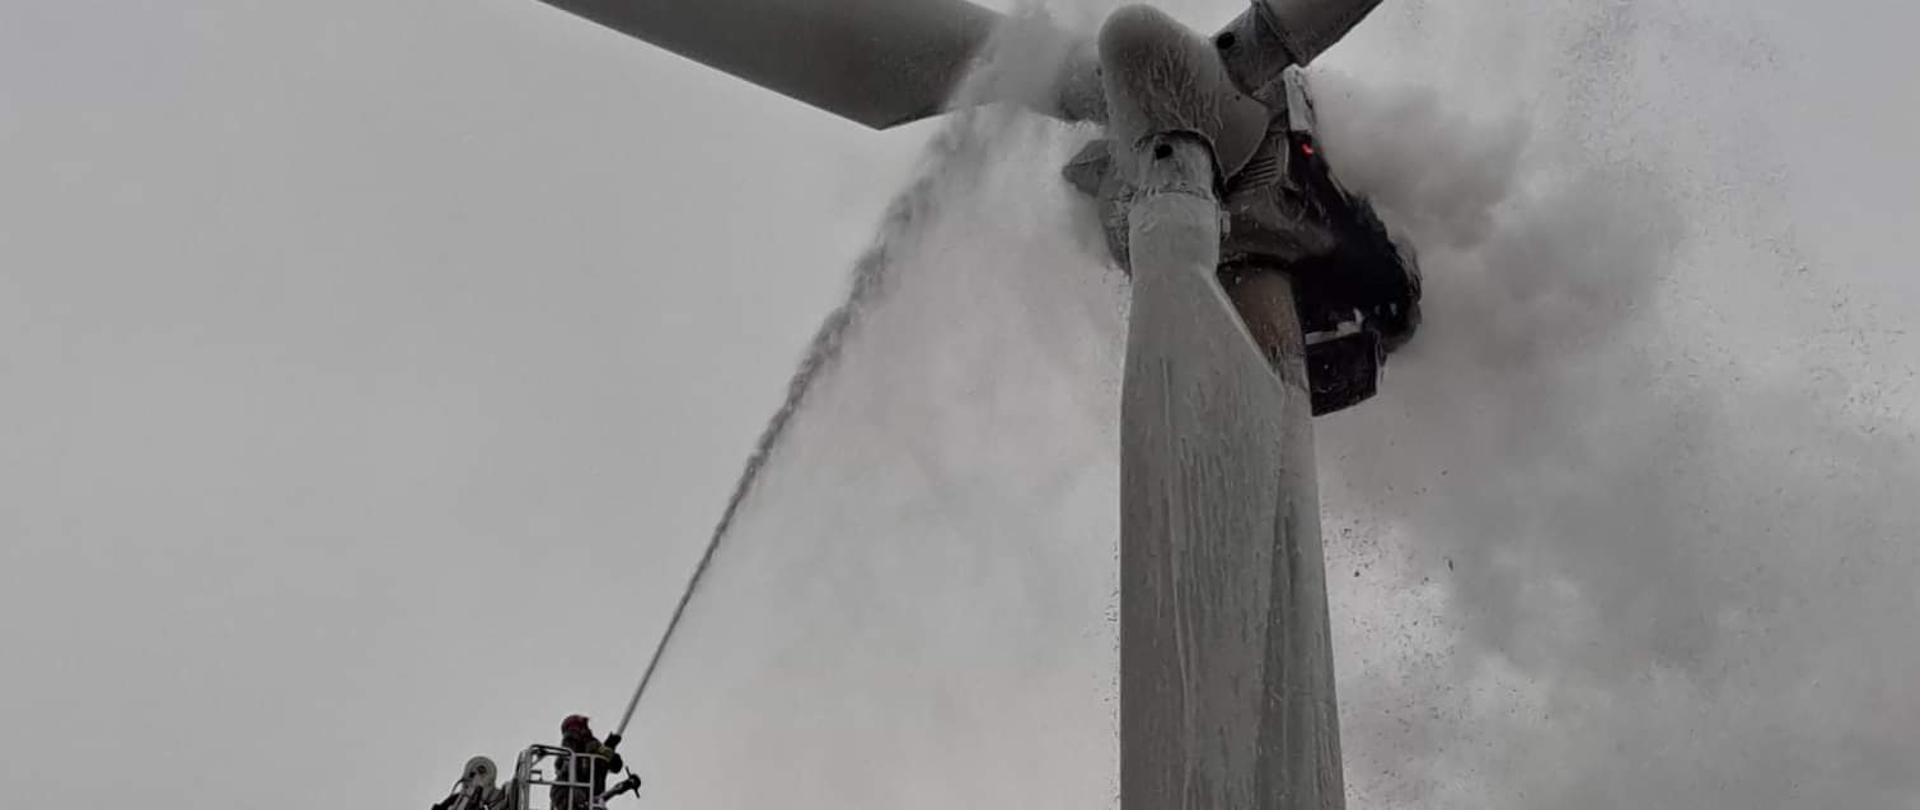 Na zdjęciu widać strażaka gaszącego z platformy podnośnika hydraulicznego pożar turbiny wiatrowej przy użyciu prądu gaśniczego.